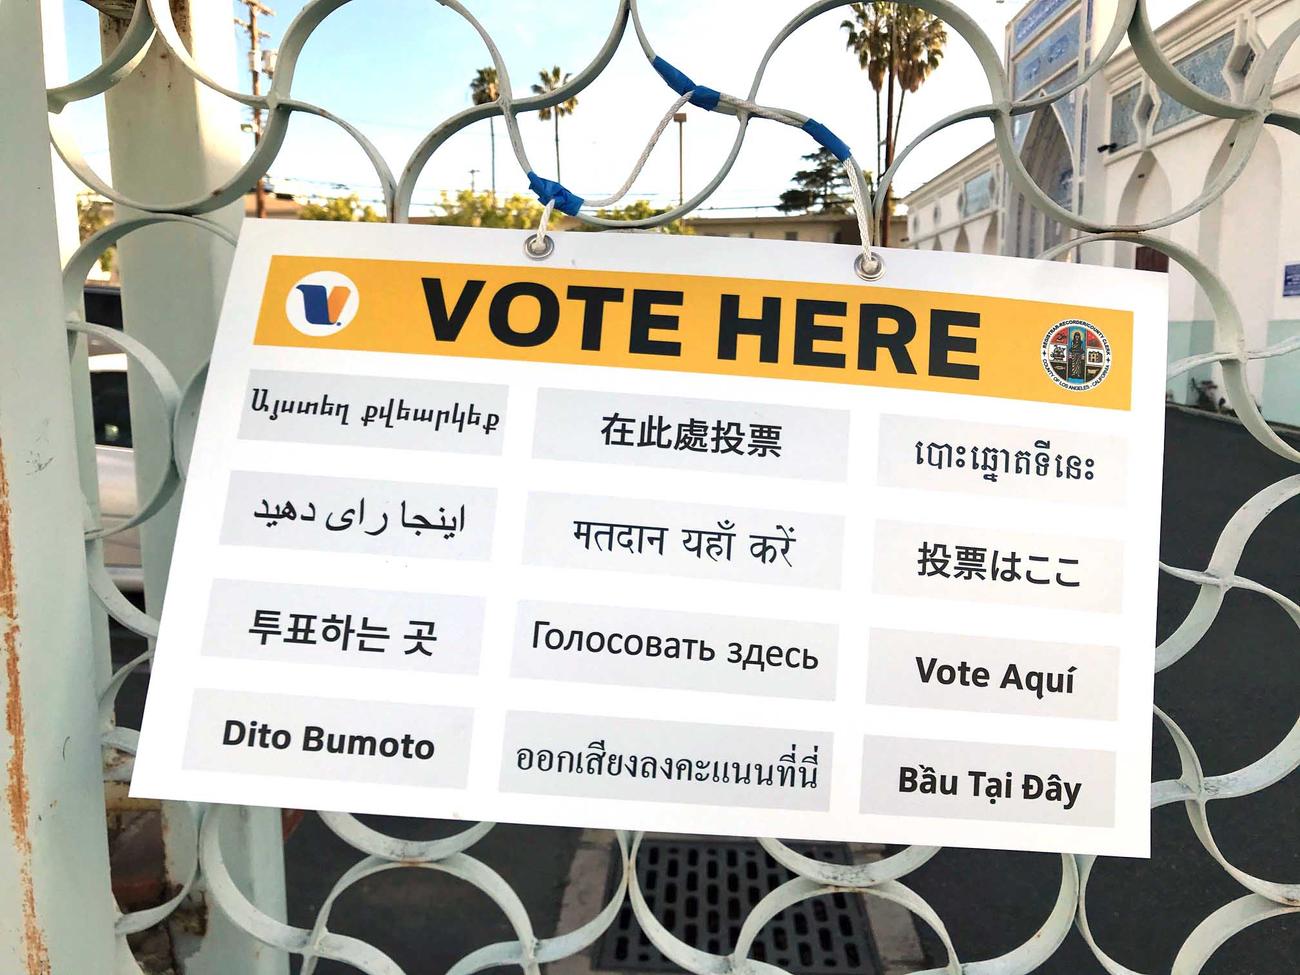 多民族国家らしく投票所には日本語を含む複数の言語で書かれた標識があります